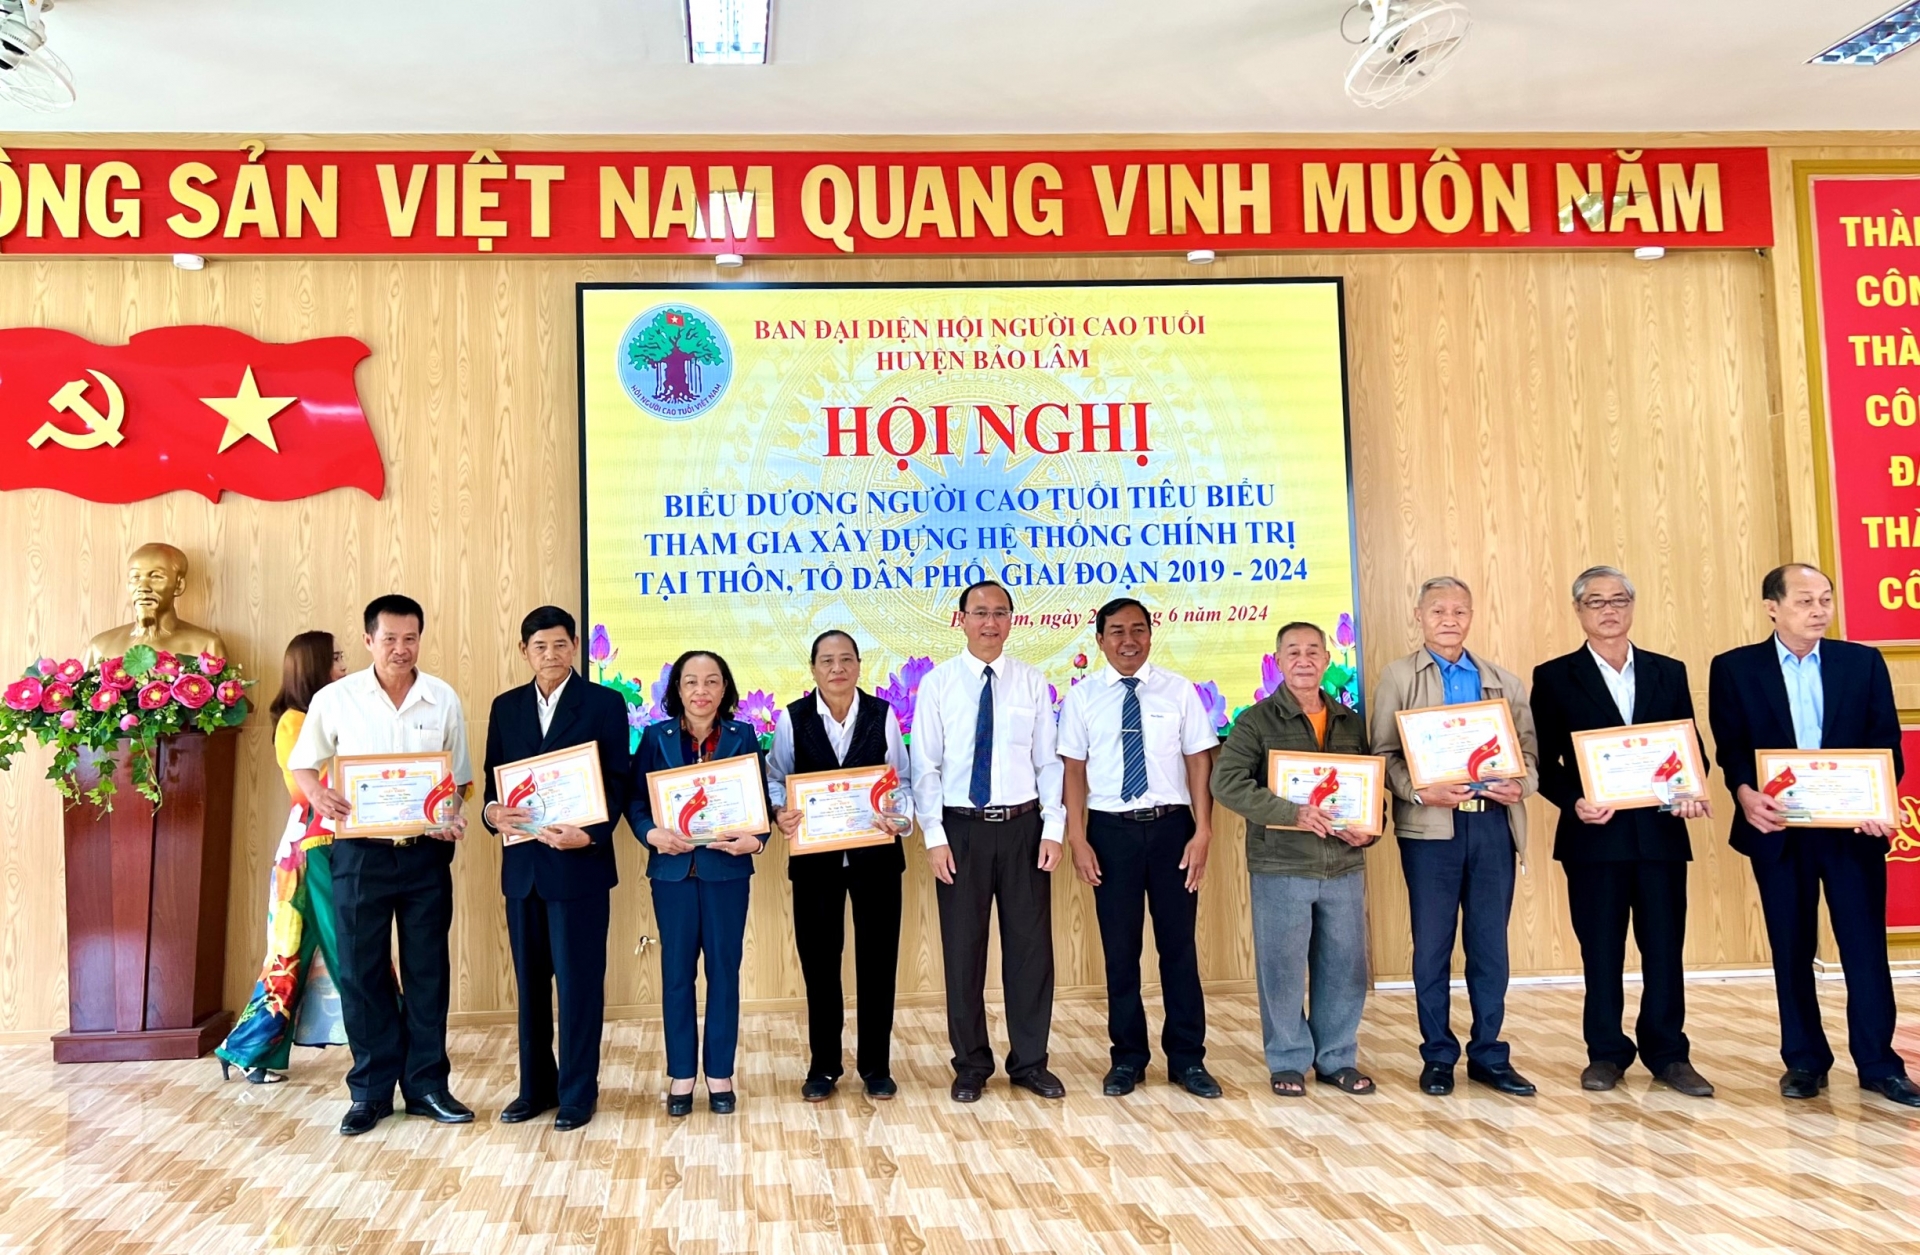 Lãnh đạo huyện Bảo Lâm trao khen thưởng cho người cao tuổi tiêu biểu tham gia xây dựng hệ thống chính trị ở cơ sở 